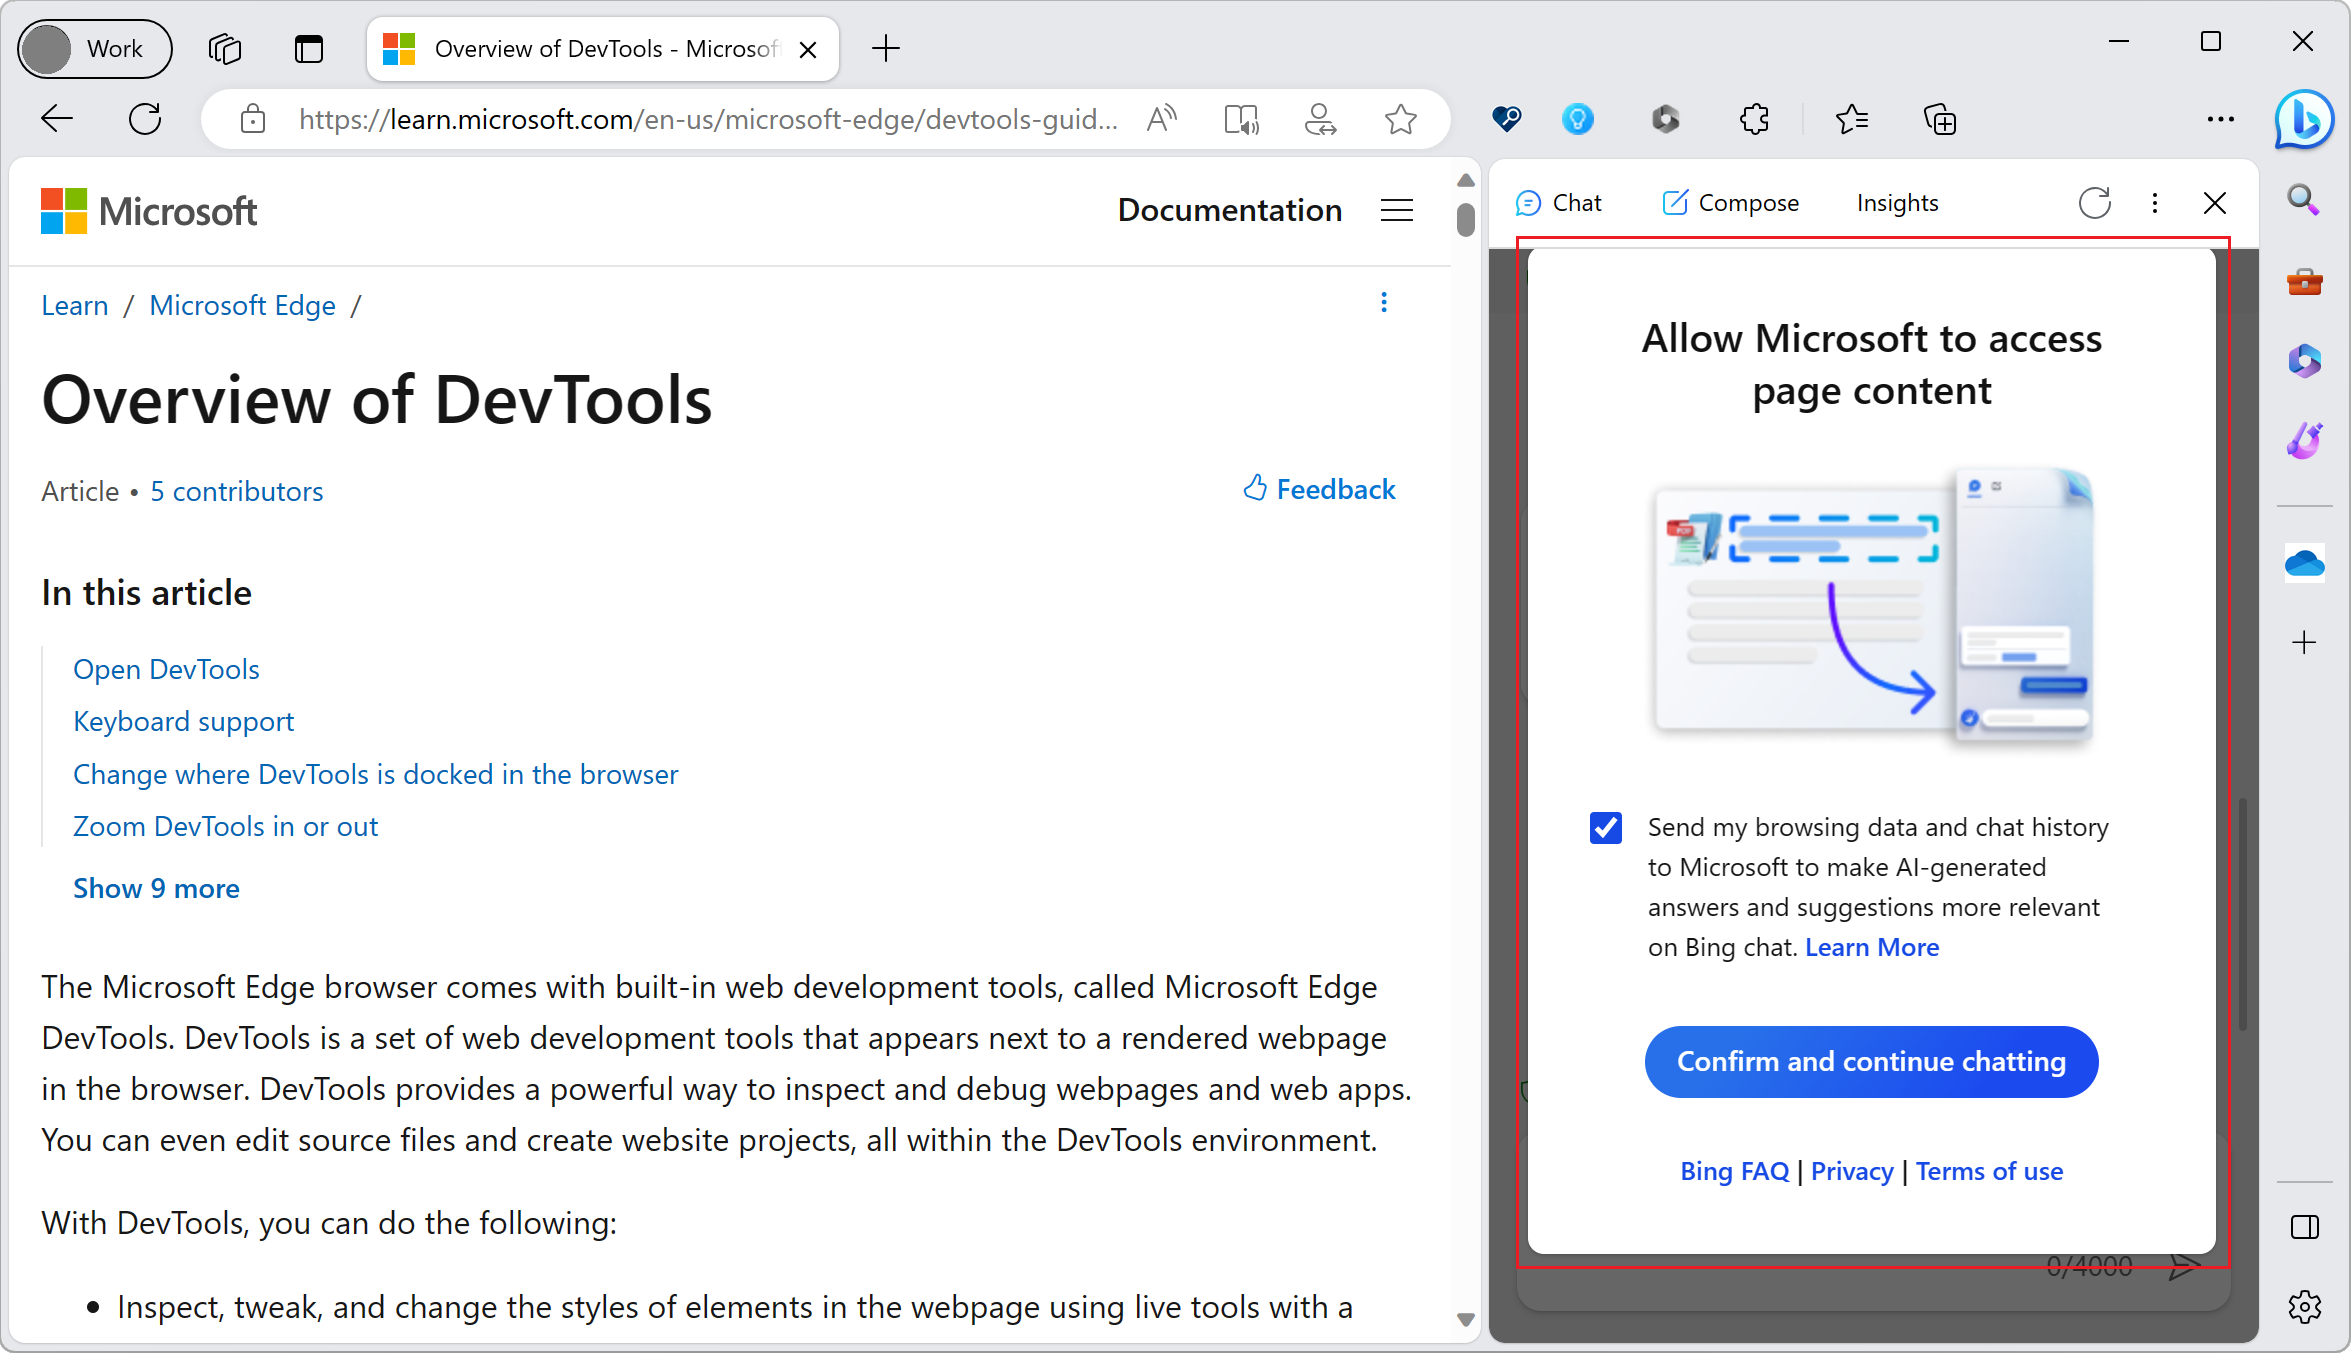 Copilot demandant le consentement pour accéder au contenu de la page dans Microsoft Edge